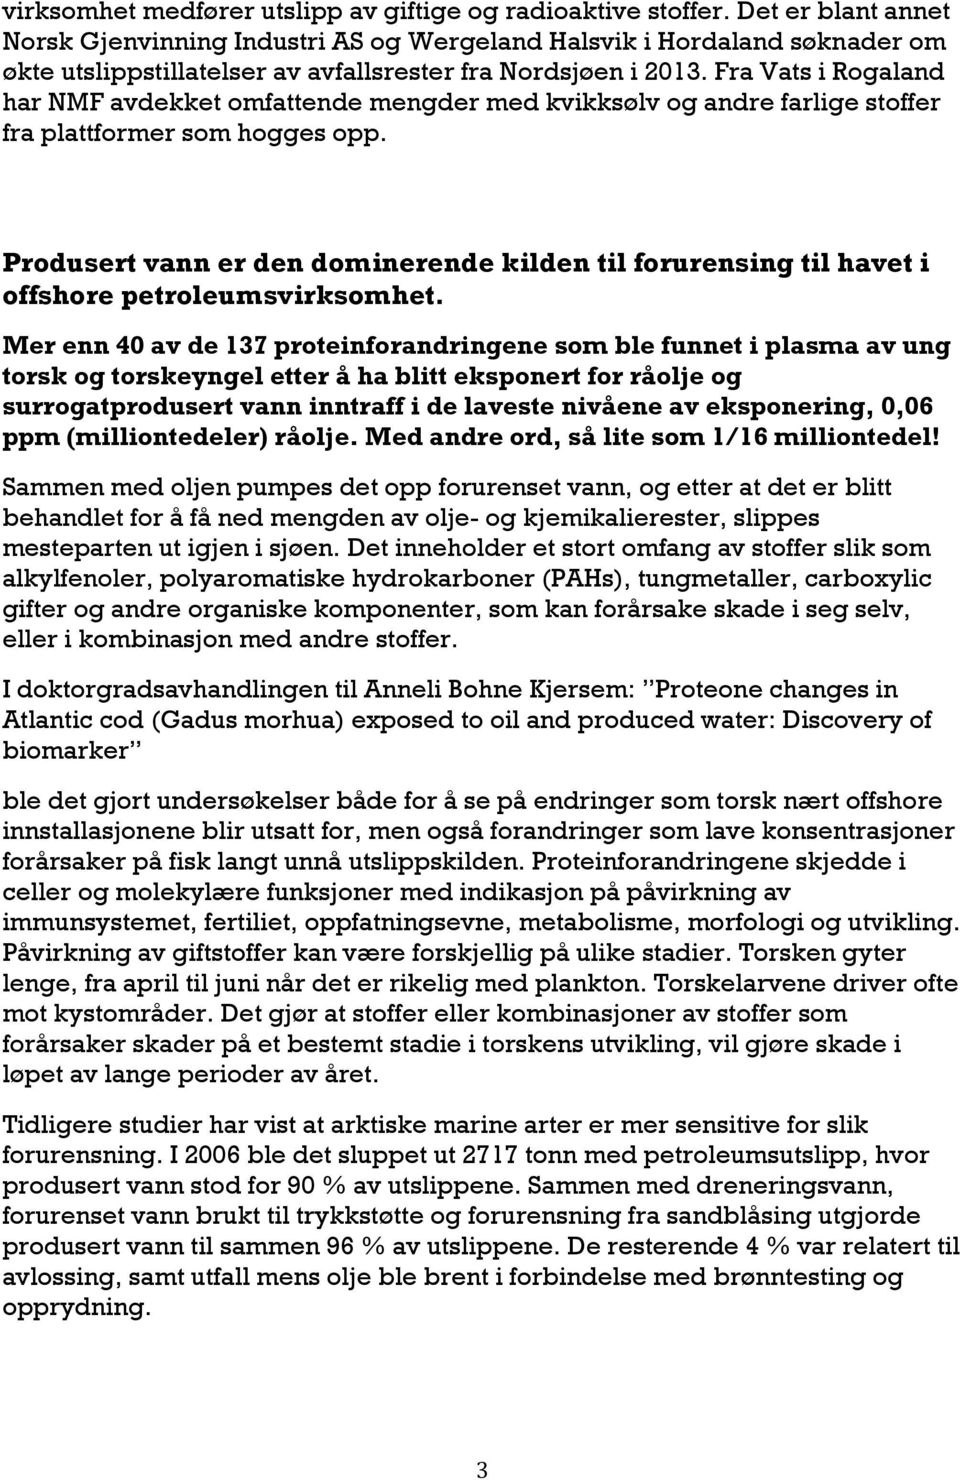 Fra Vats i Rogaland har NMF avdekket omfattende mengder med kvikksølv og andre farlige stoffer fra plattformer som hogges opp.